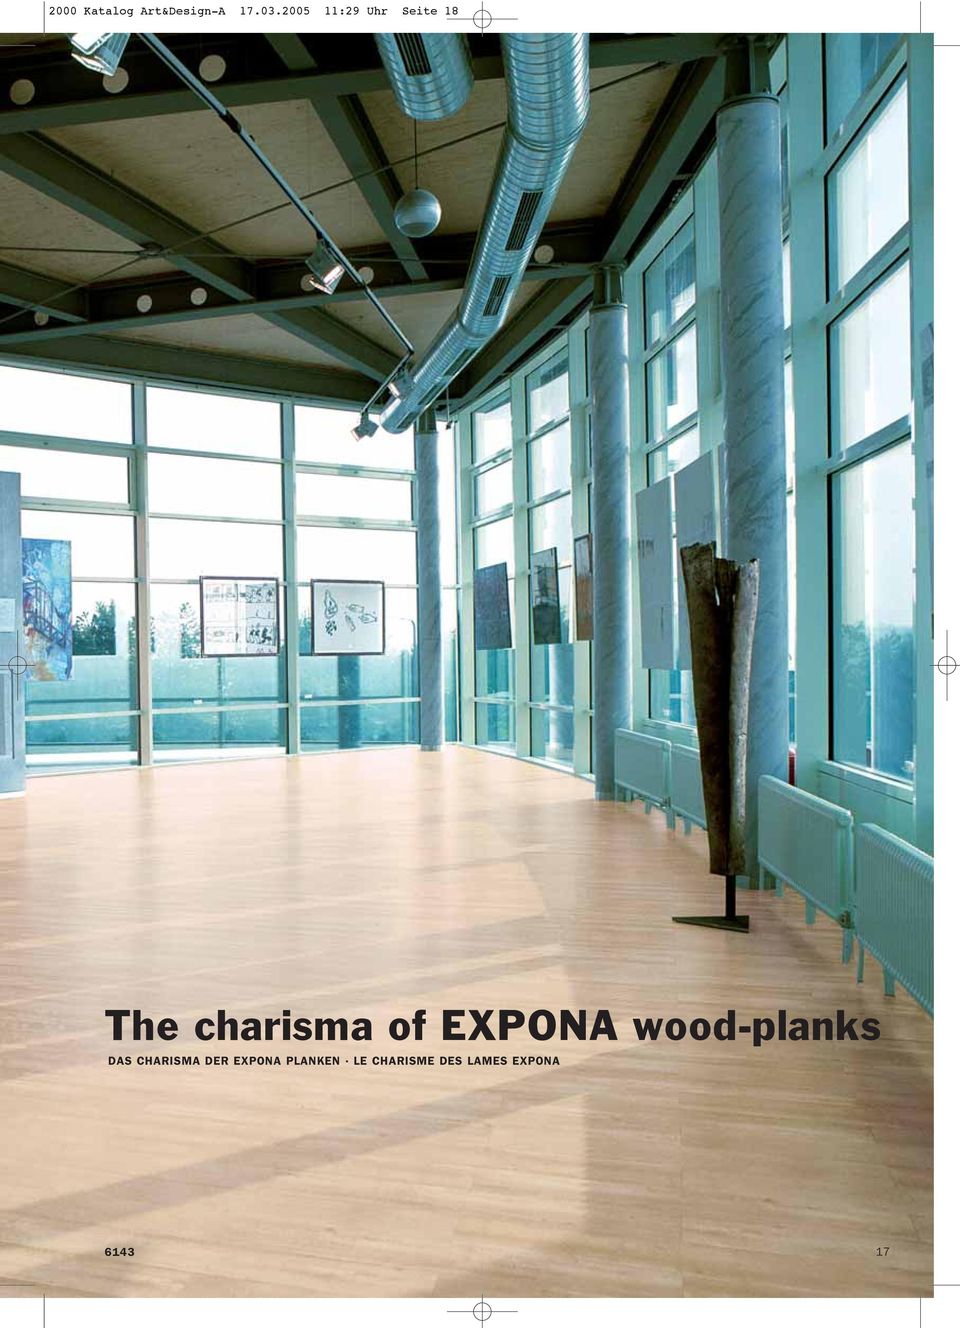 EXPONA wood-planks DAS CHARISMA DER